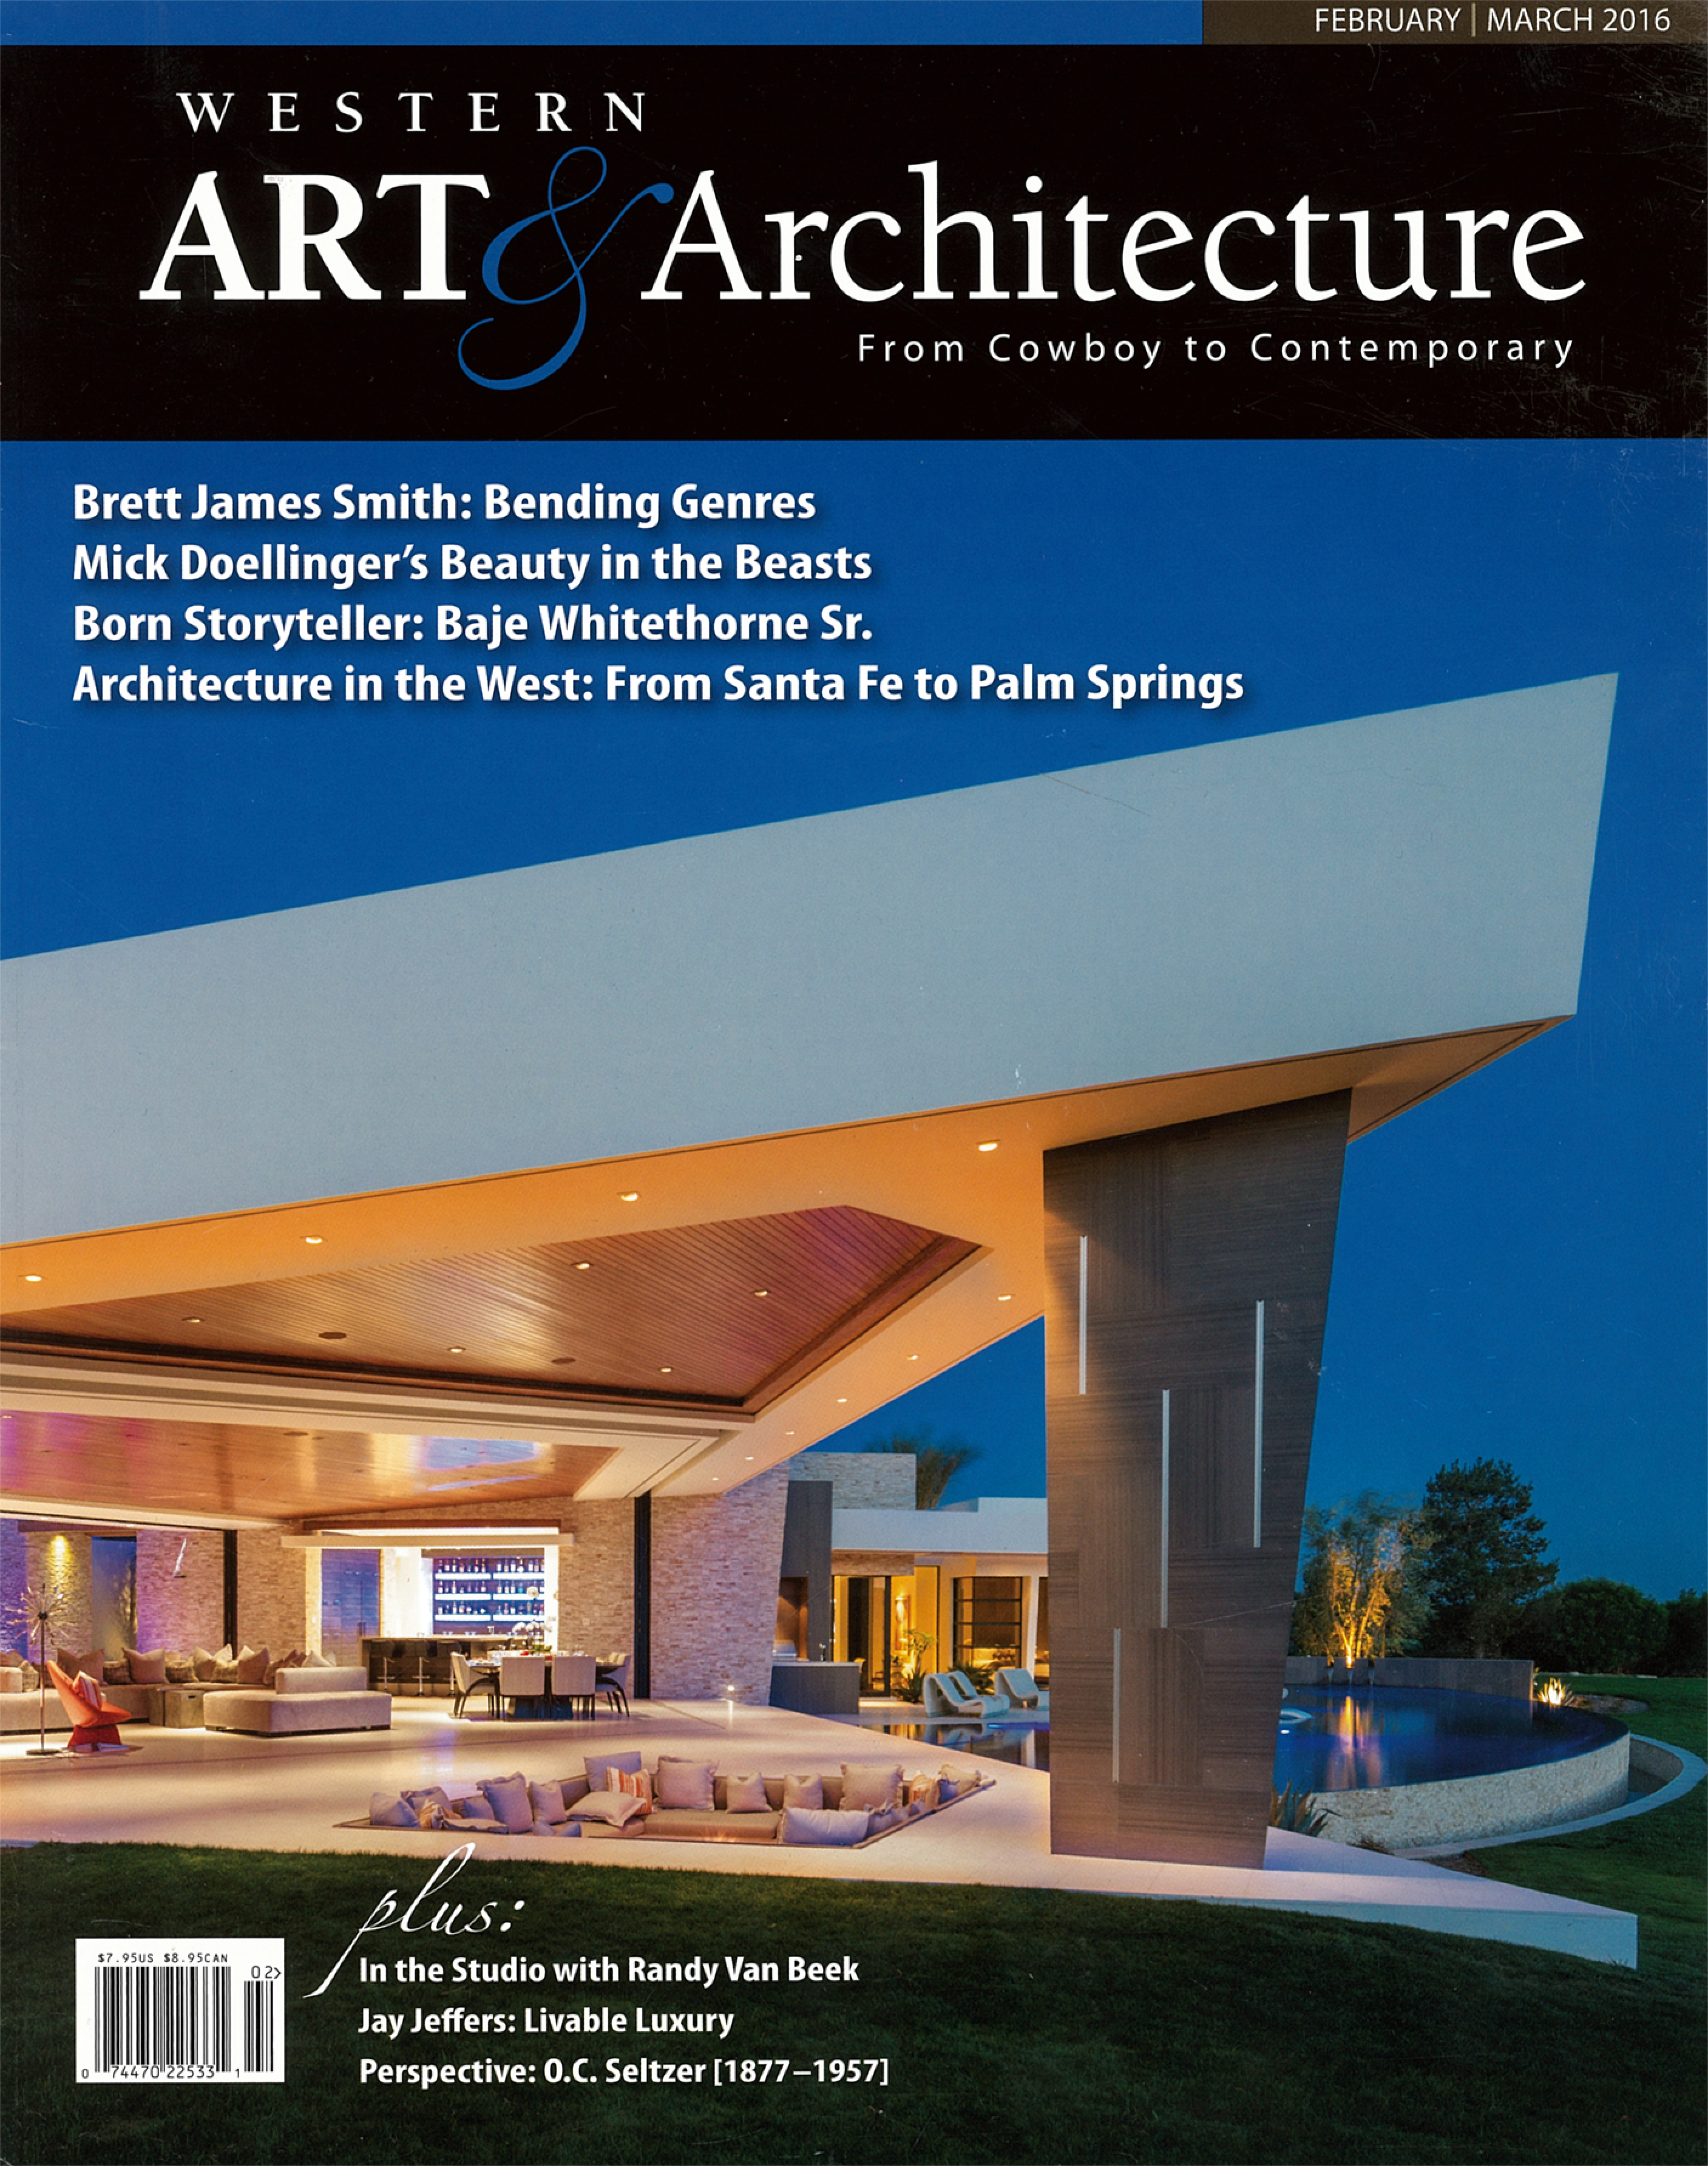 Art + Architecture Serquis Landscape Architects